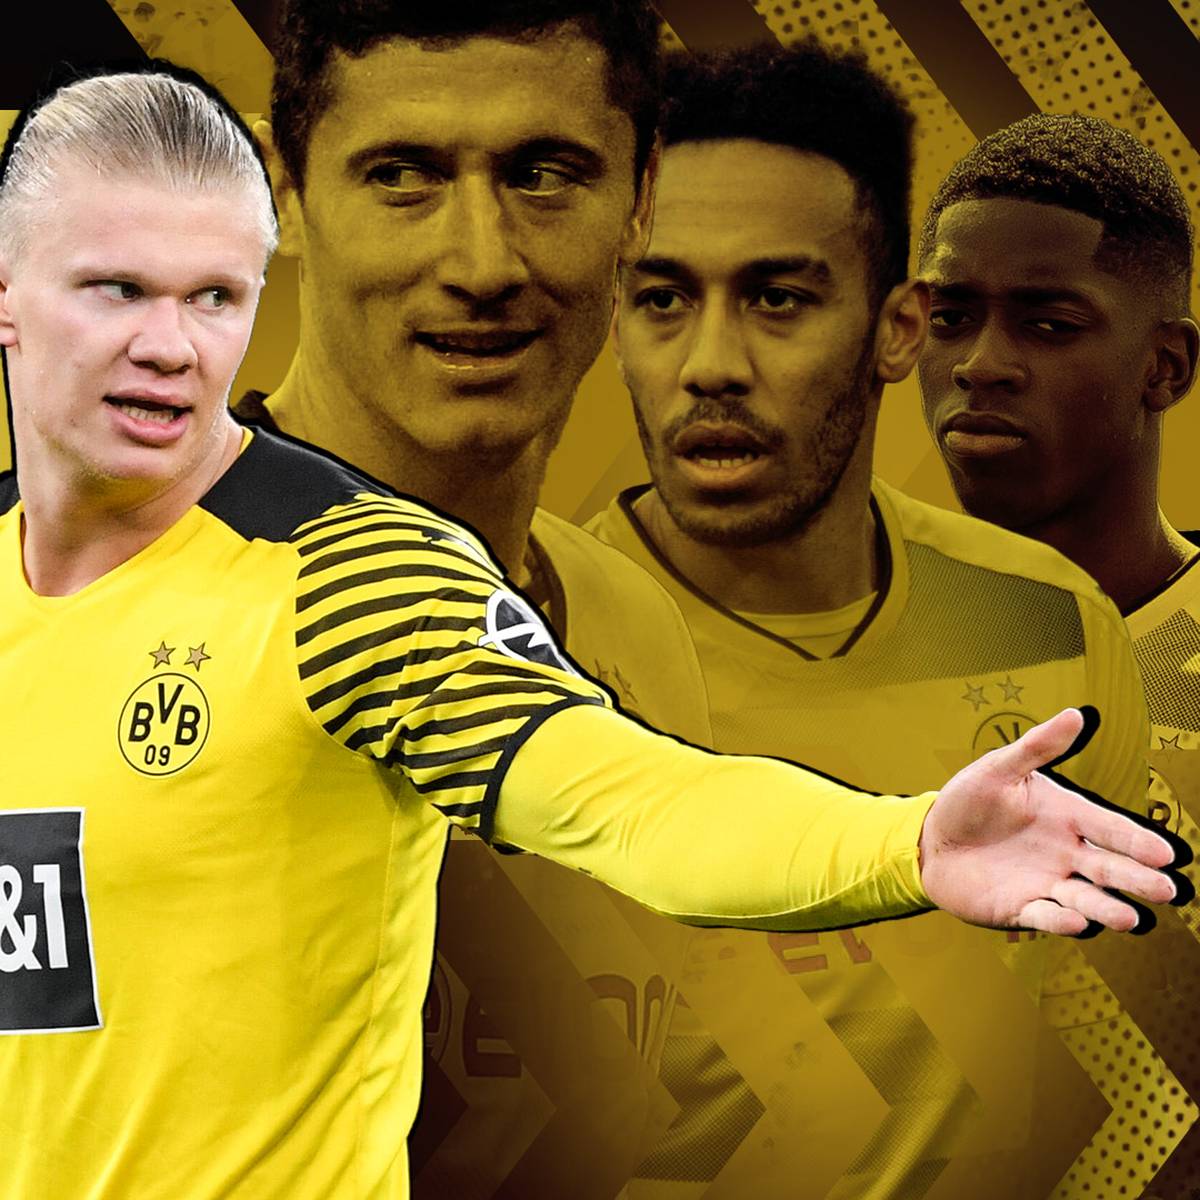 Erling Haaland gibt ein Interview, das den Showdown um seine Zukunft endgültig beginnen lässt. Doch wie liefen derartige Transfer-Poker in der Vergangenheit für Borussia Dortmund?